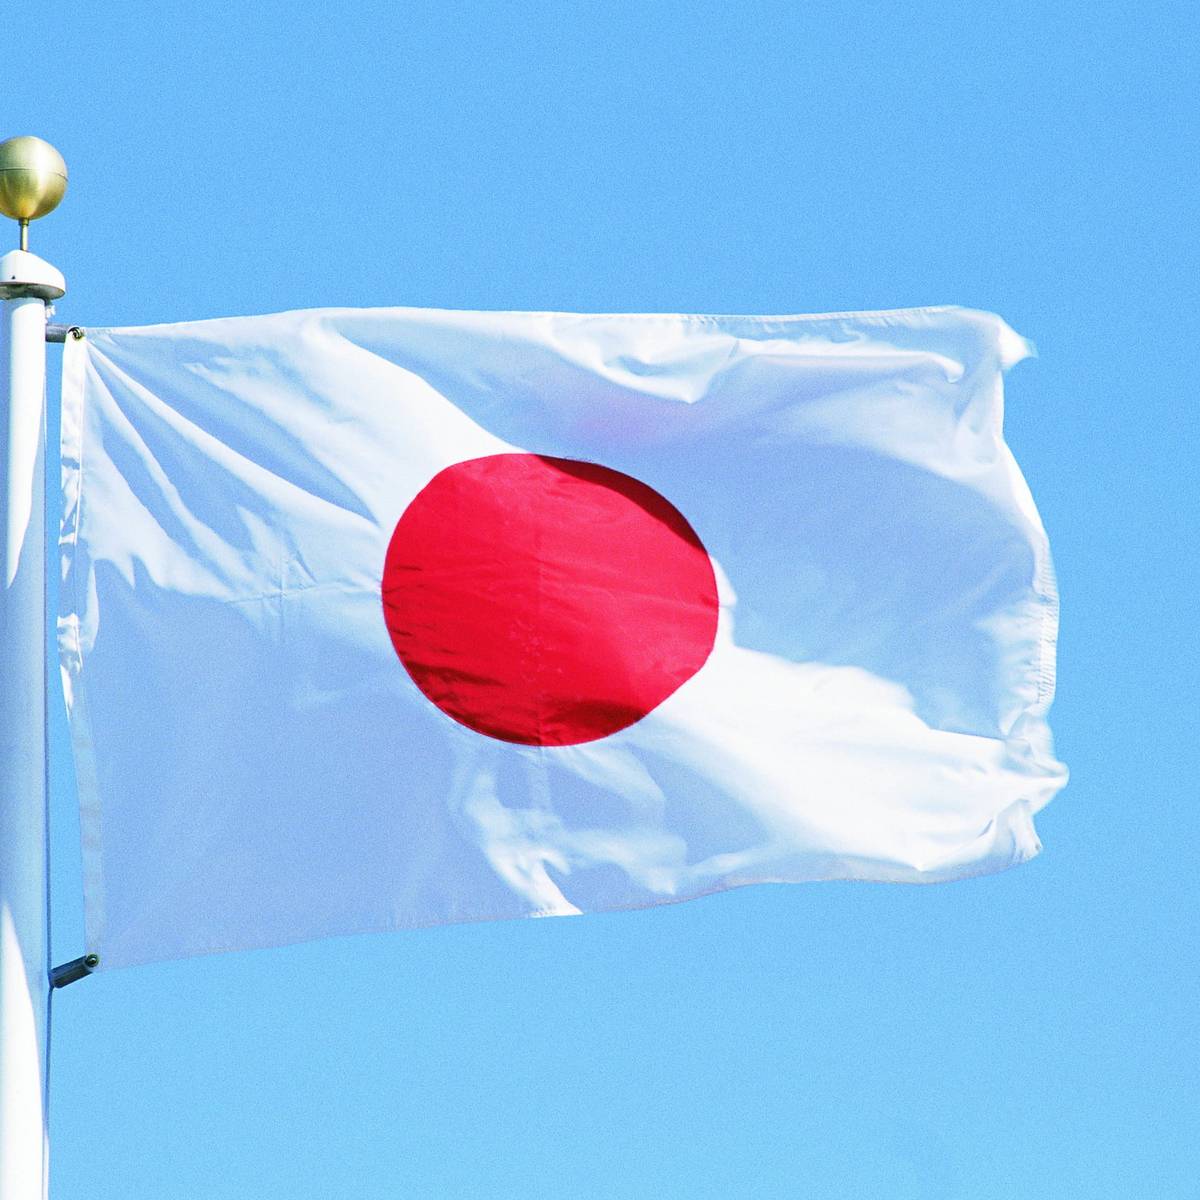 В Японии сообщили, почему Киев не получит от Токио списанные гаубицы и РСЗО